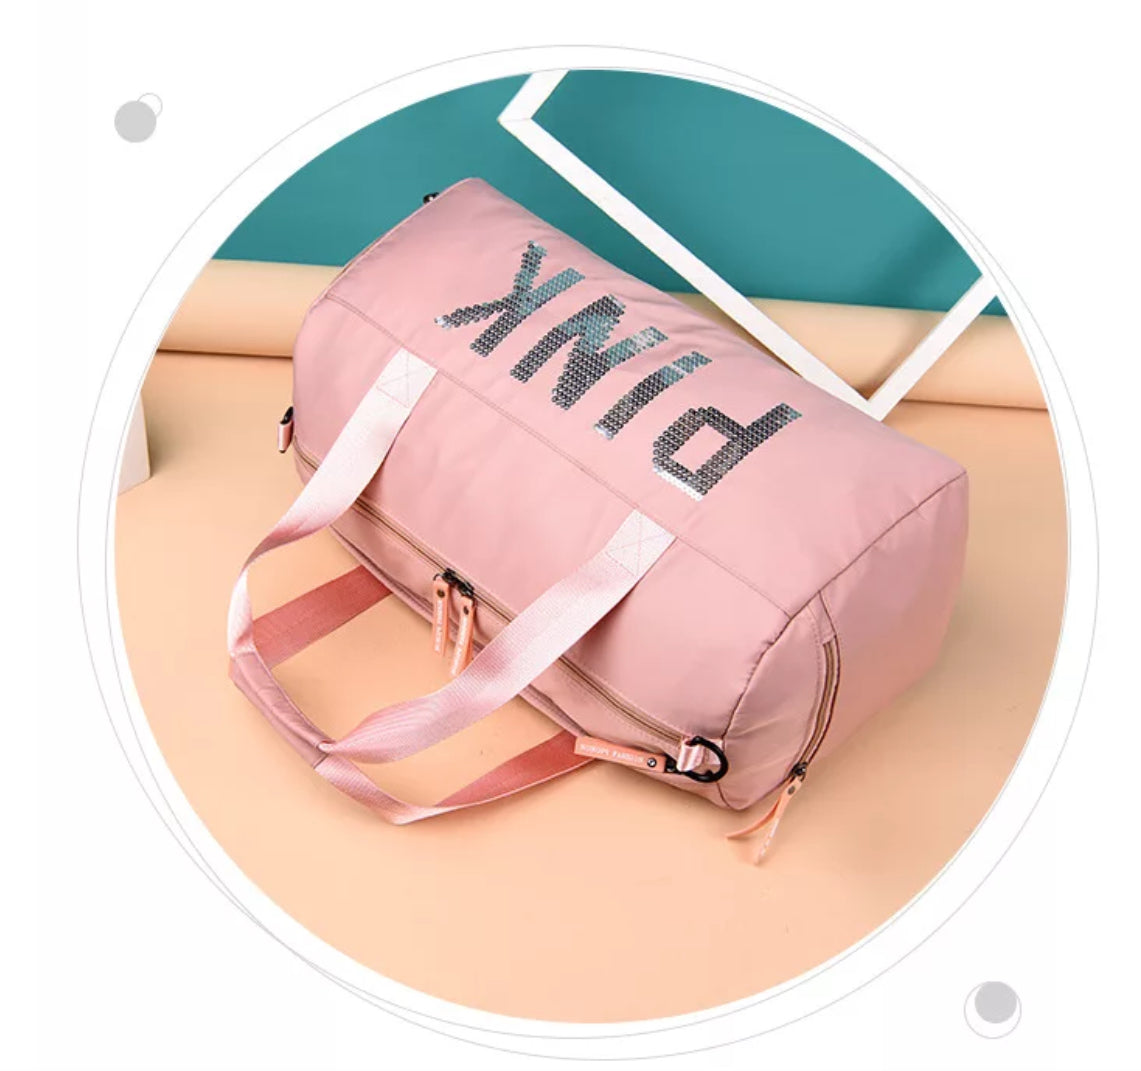 Pink Duffel Bag | Fitness Shoulder Bag For Women